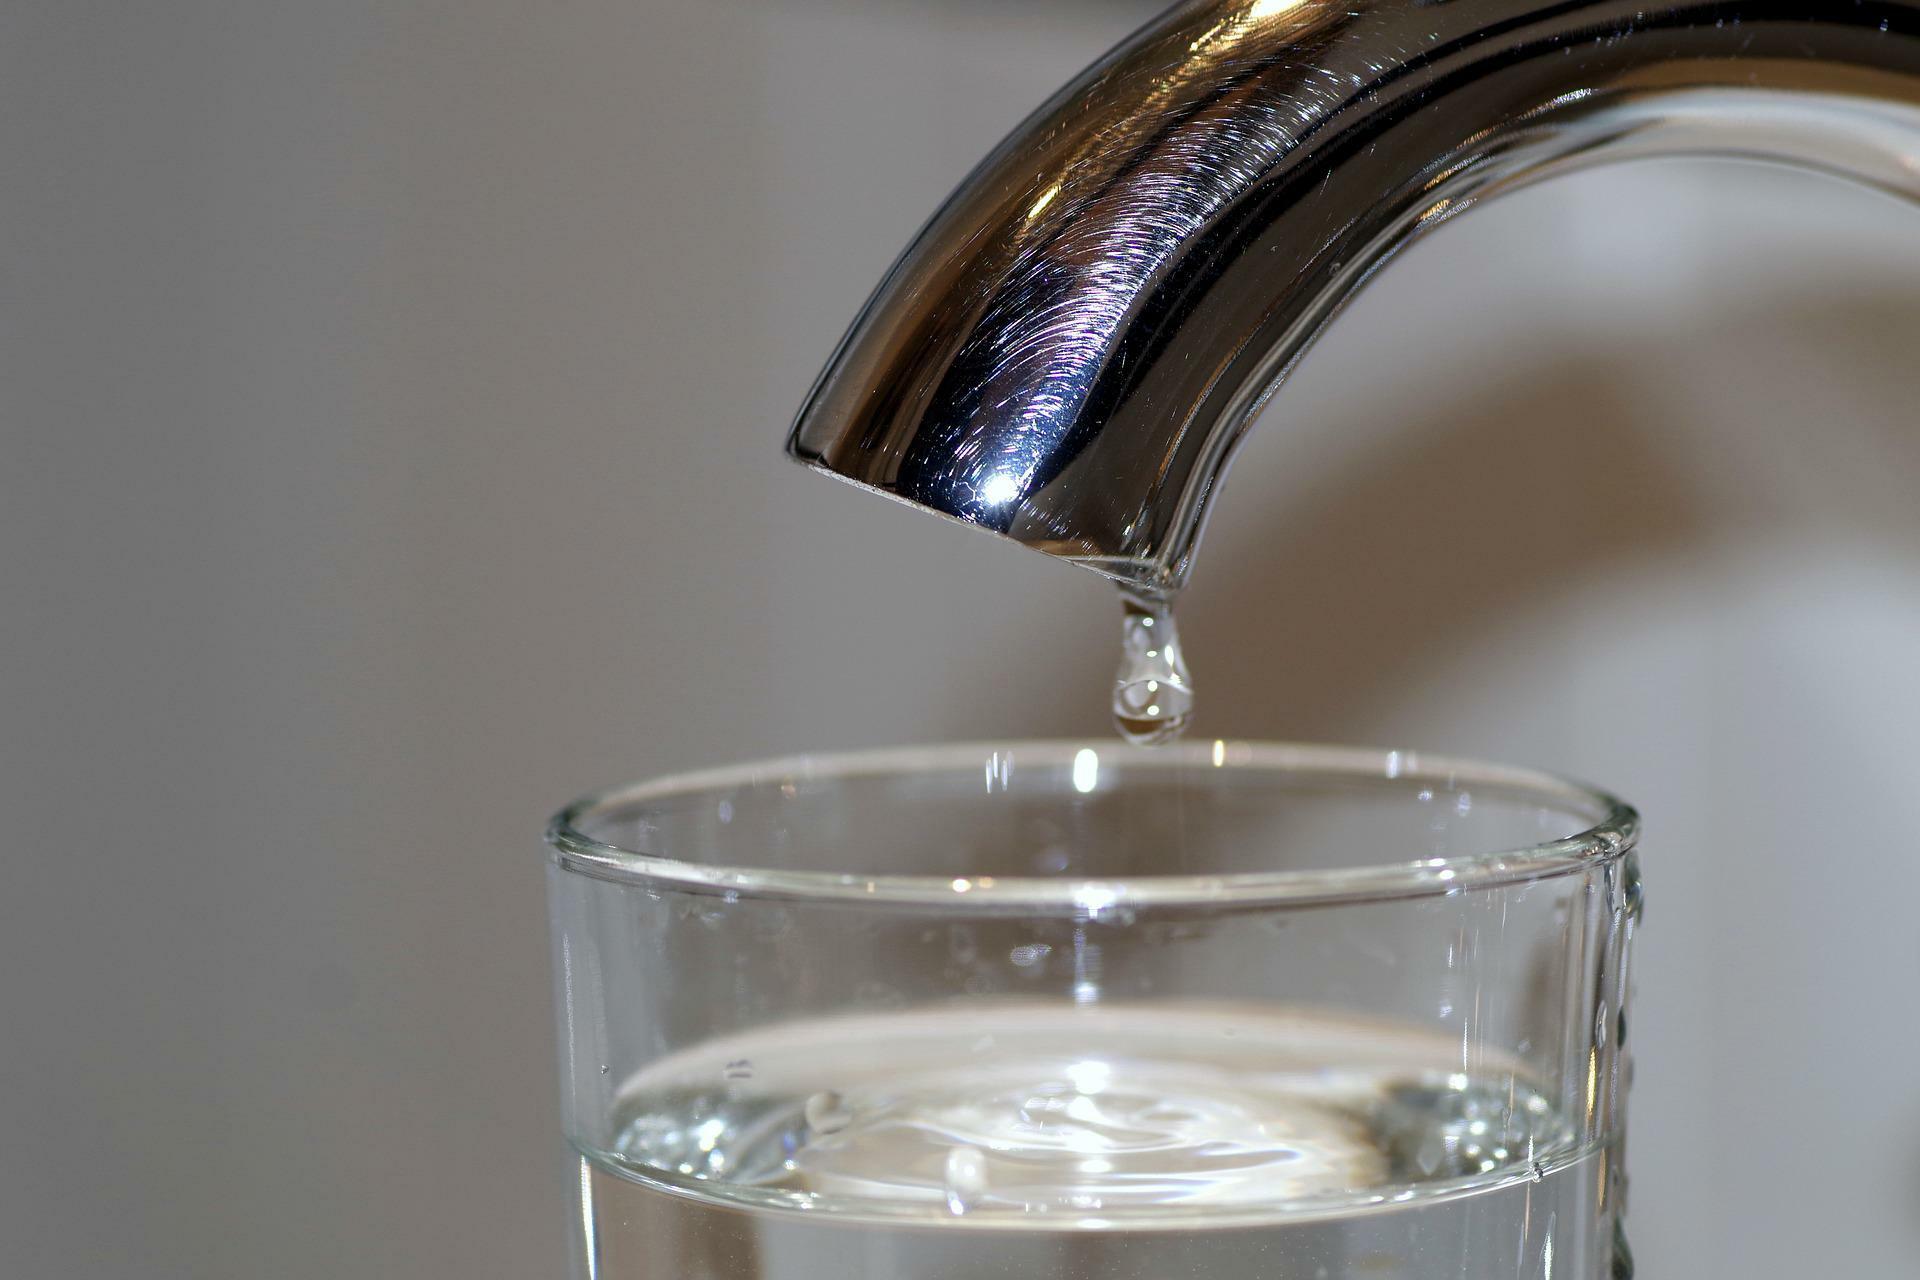 Súčasná legislatíva privatizáciu pitnej vody neumožňuje, tvrdia odborári